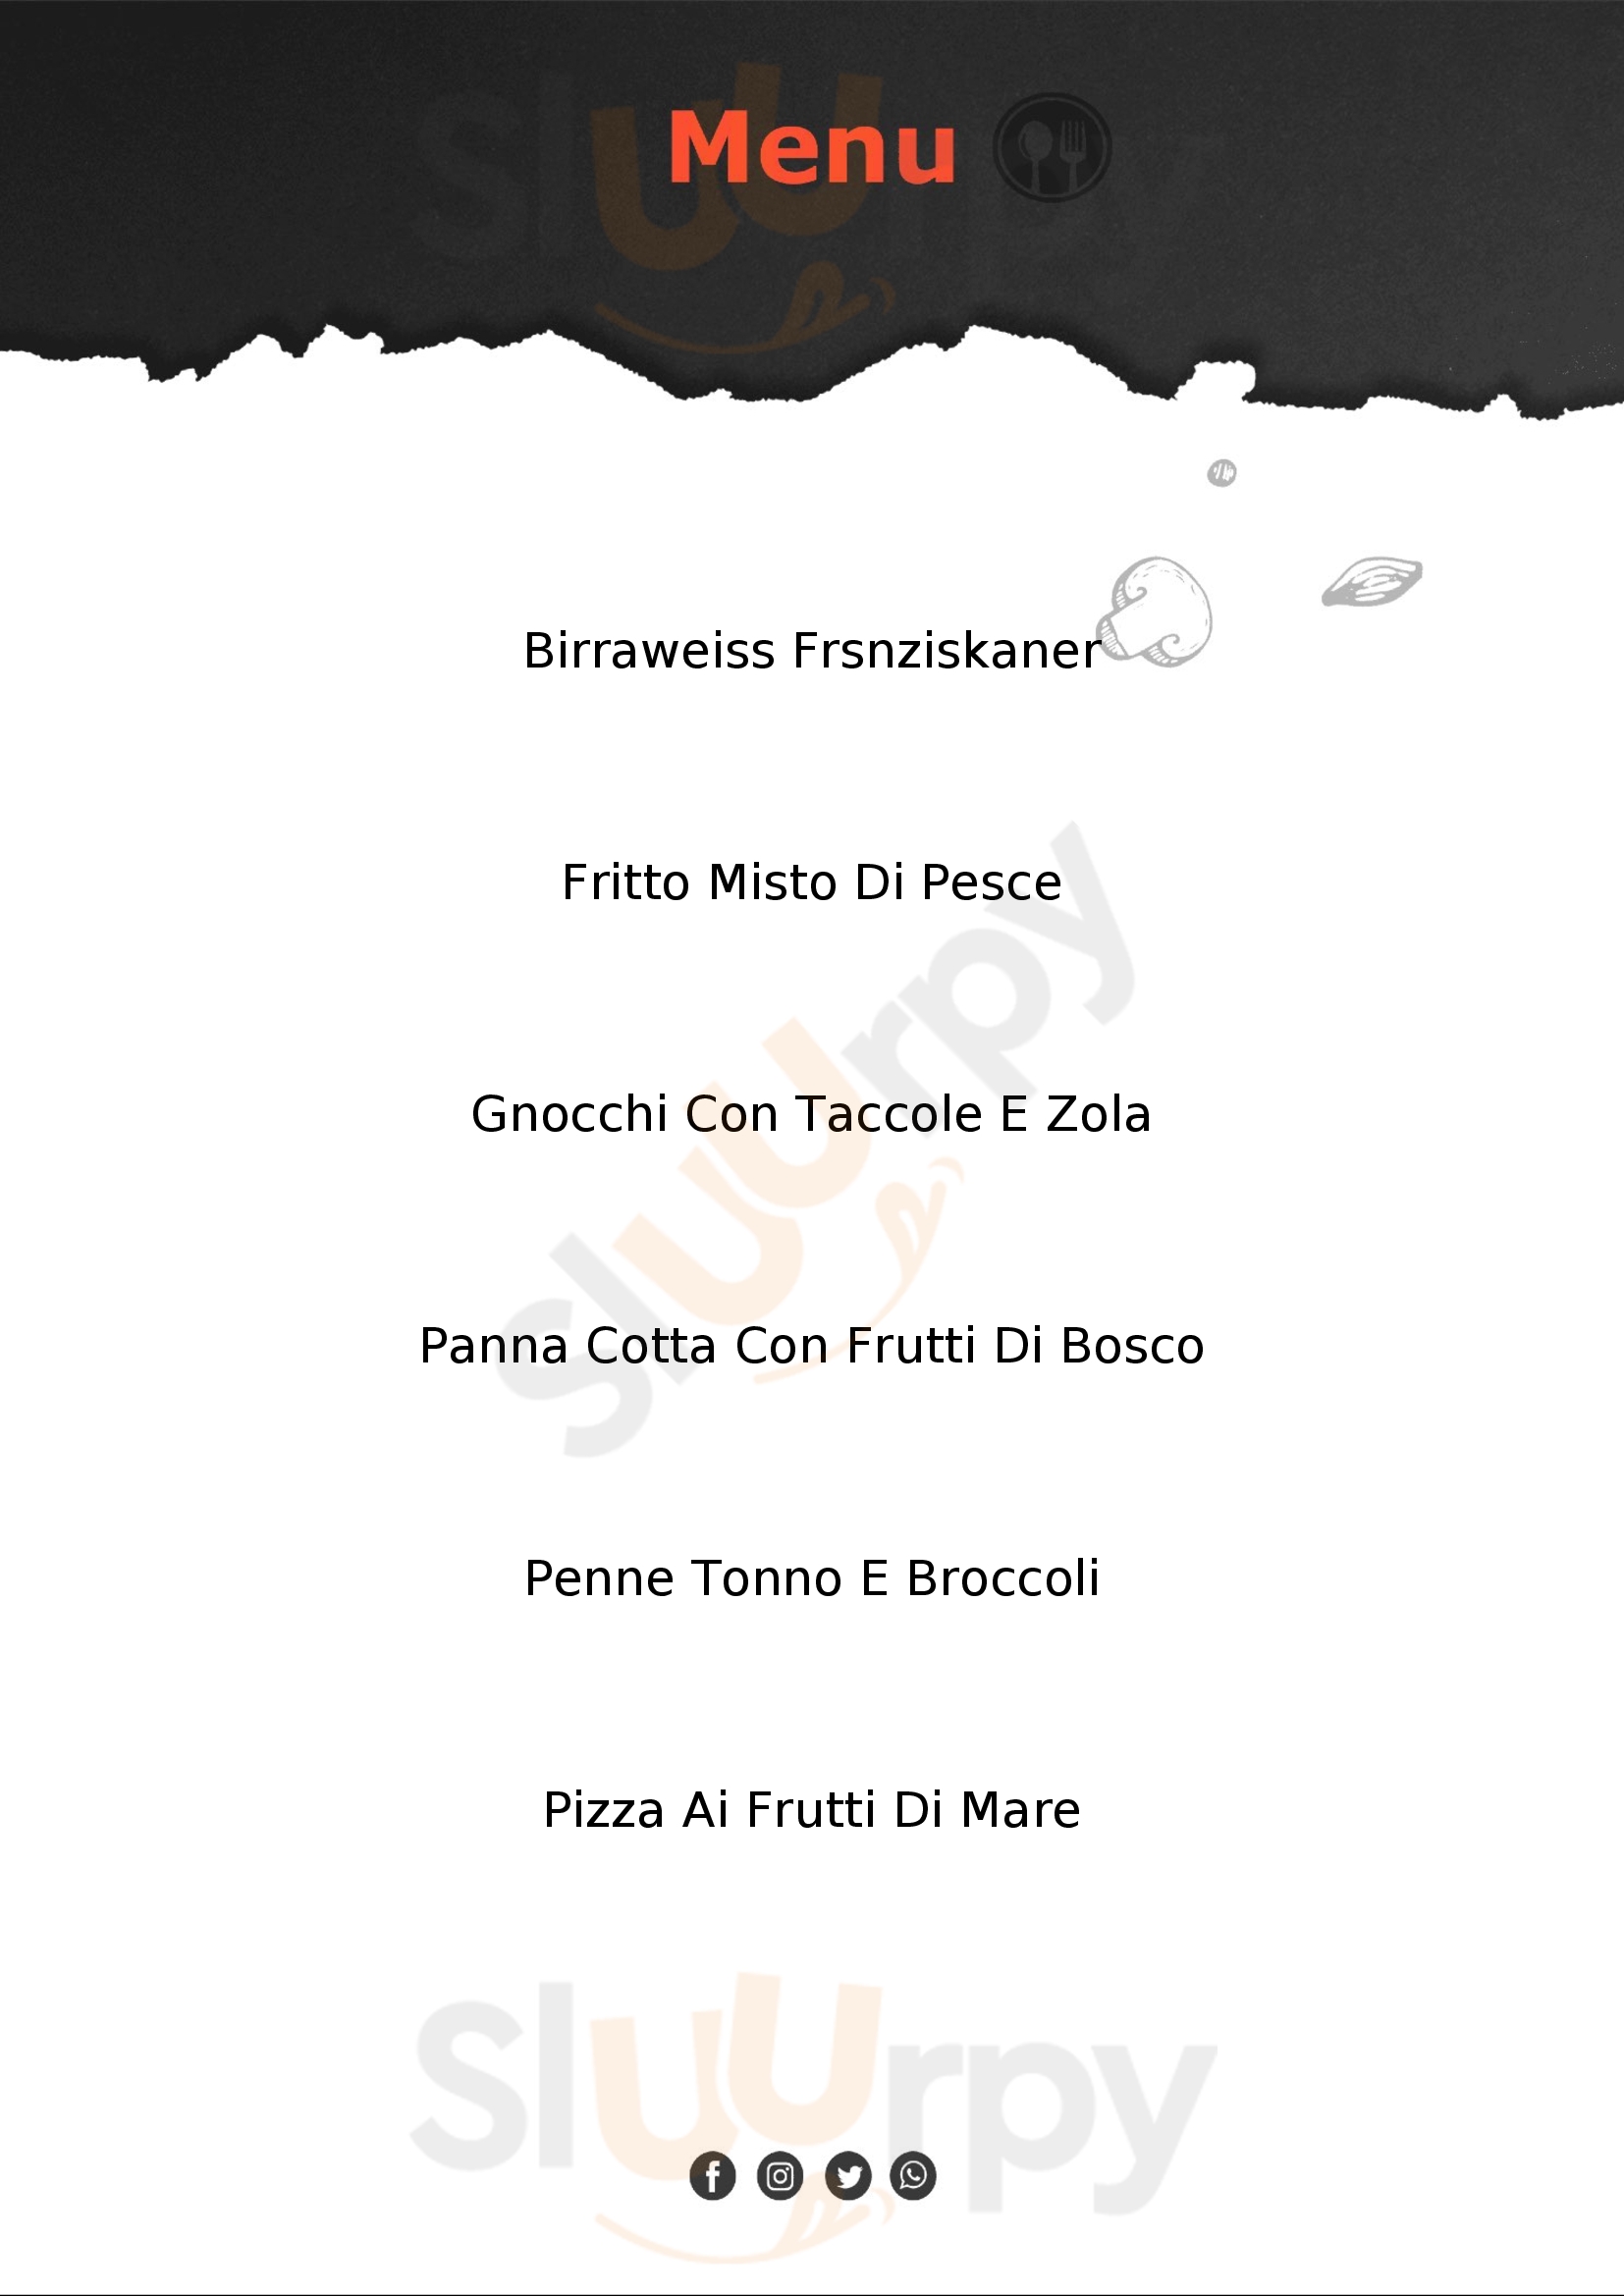 Ristorante Pizzeria SMILE 2.0 Fombio menù 1 pagina